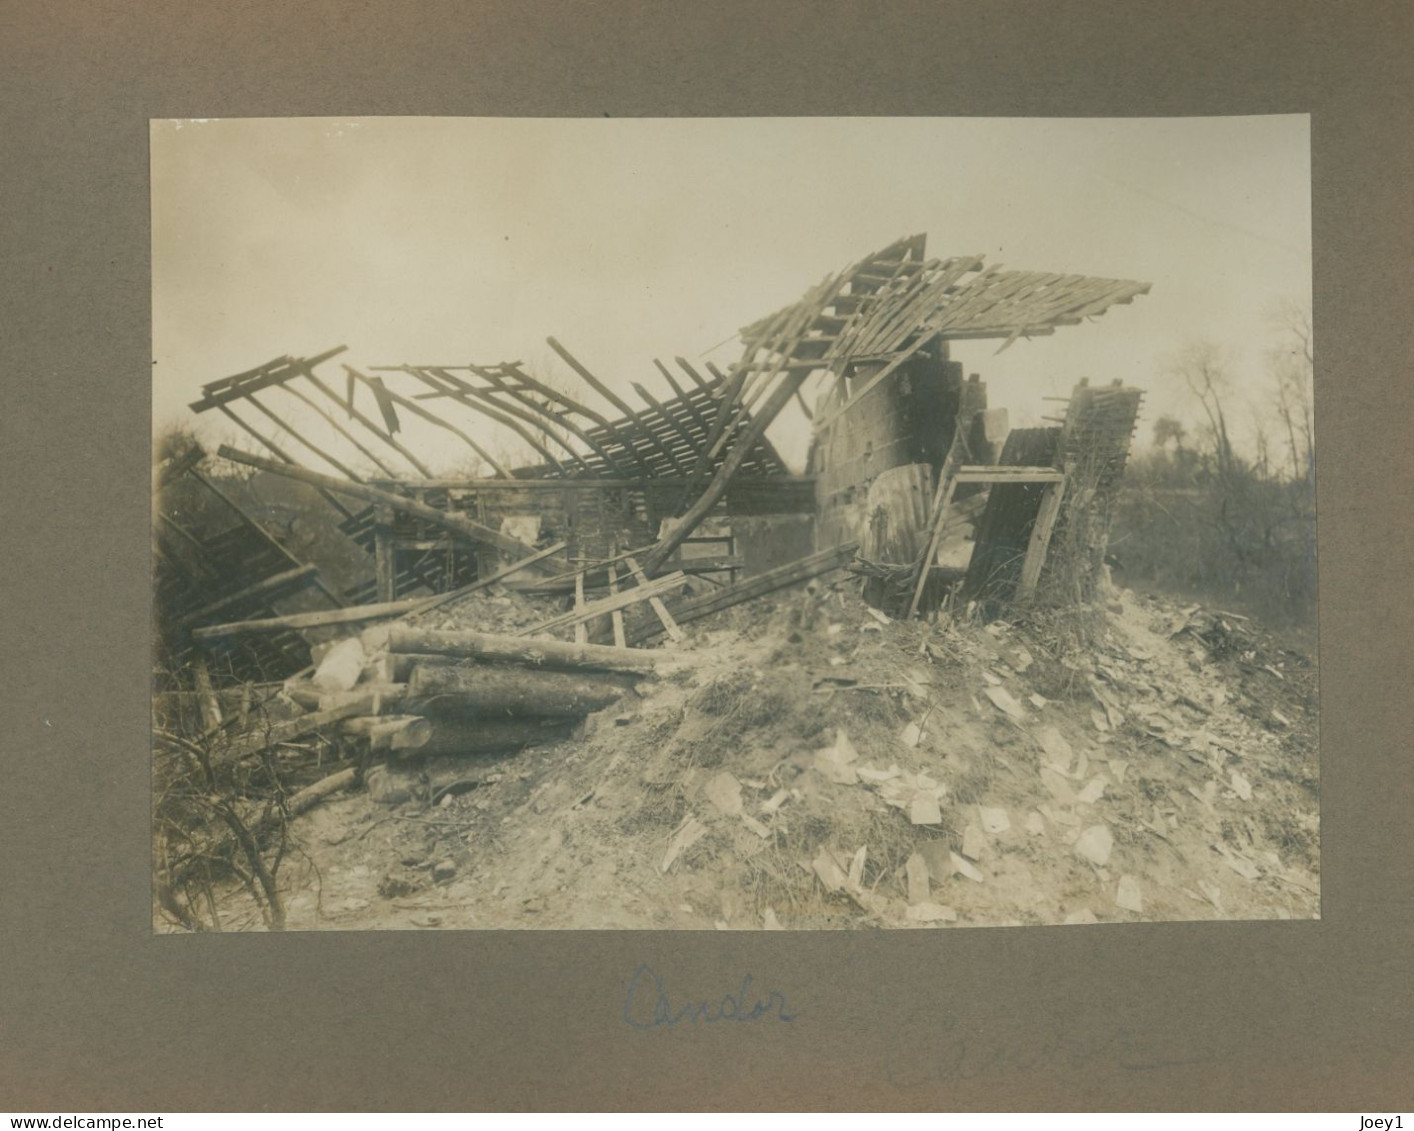 Bel Album première guerre mondiale, ville et lieux bombardés identifiés,28 photos